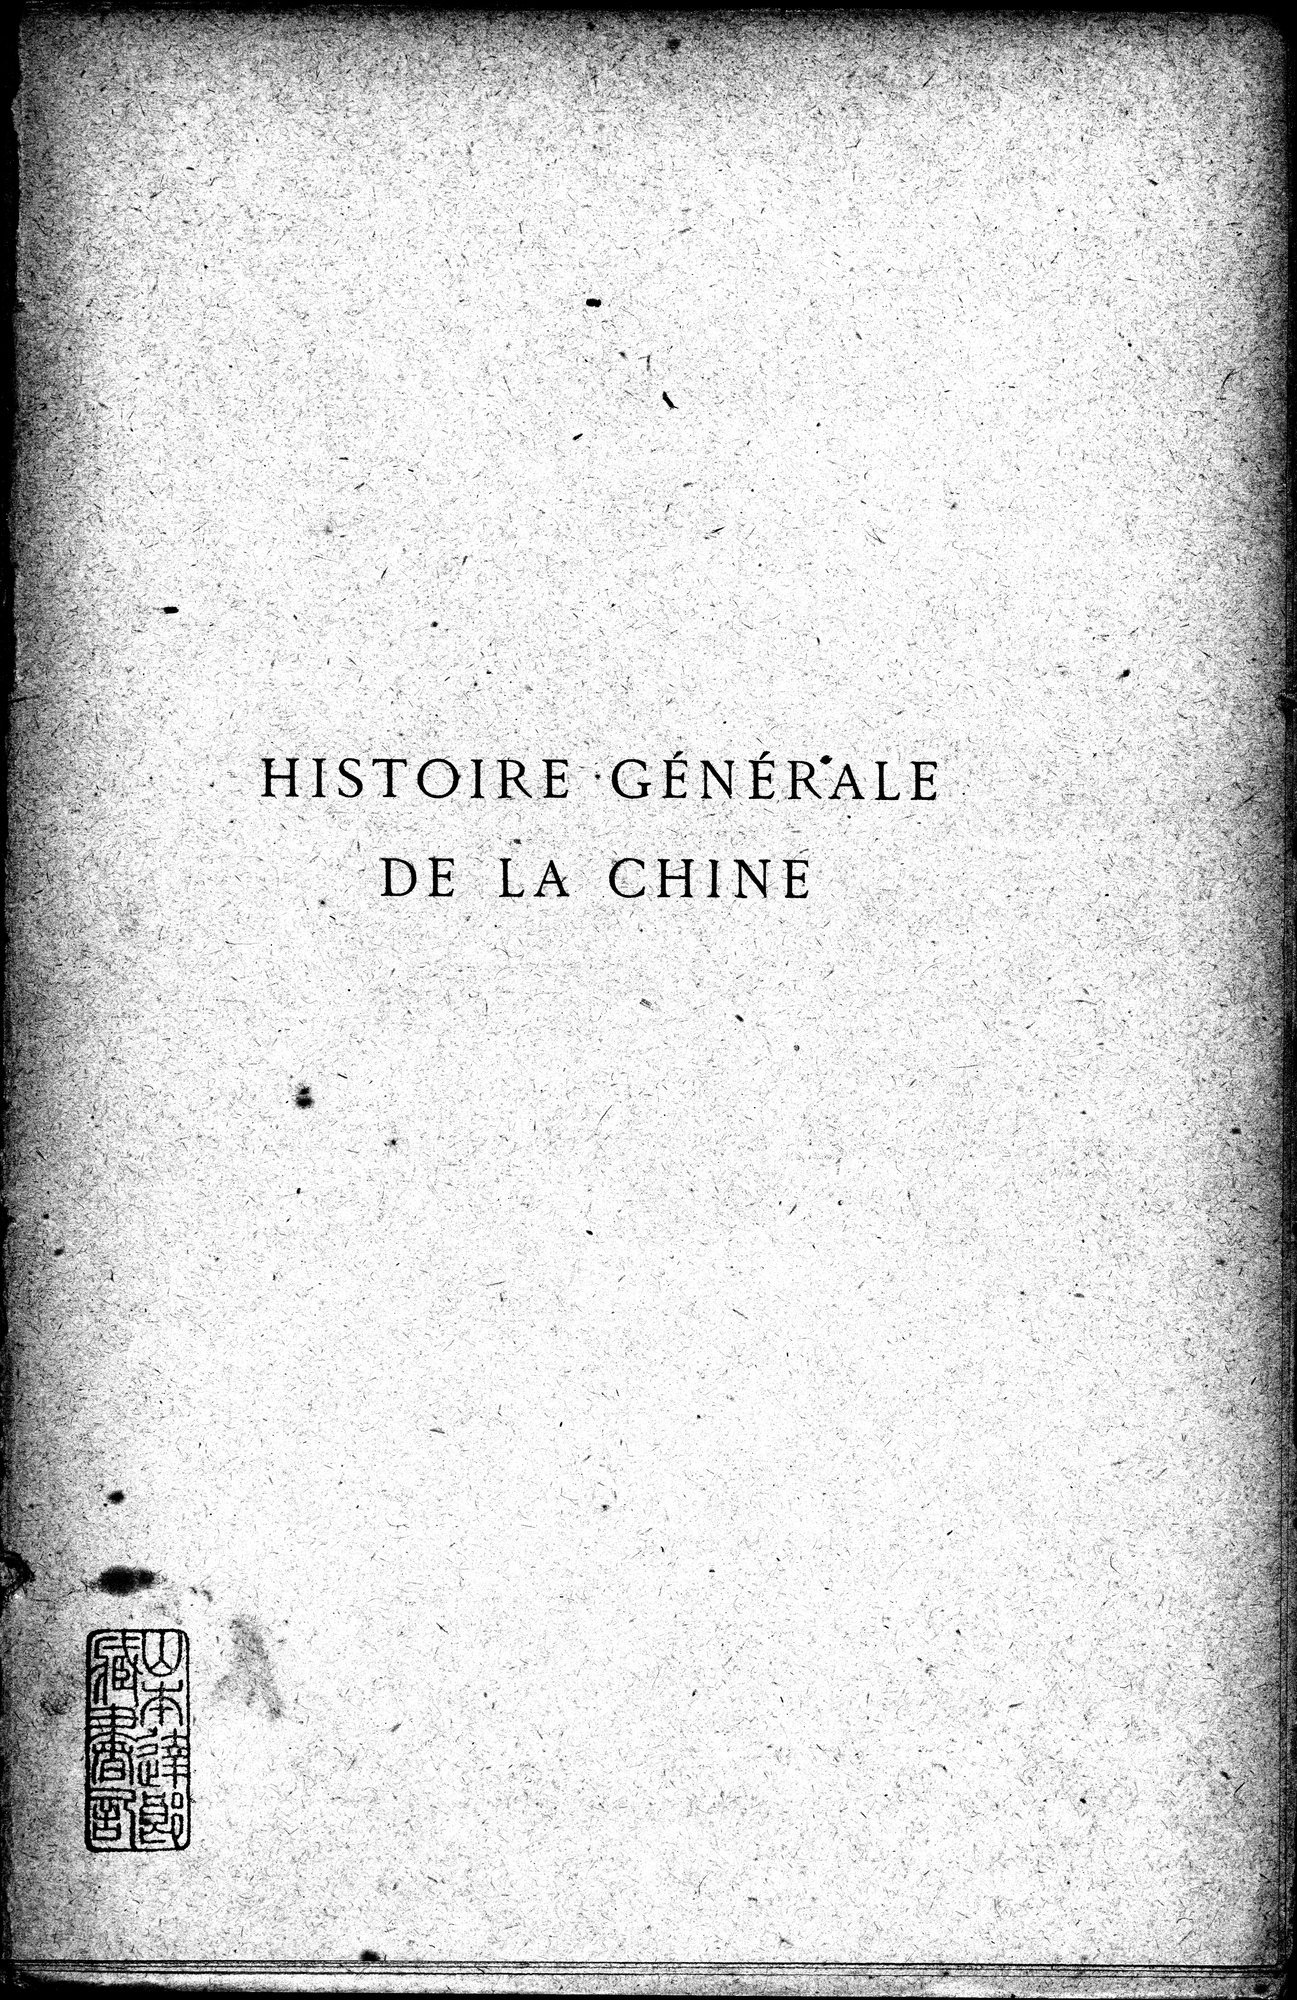 Histoire Générale de la Chine : vol.2 / Page 3 (Grayscale High Resolution Image)